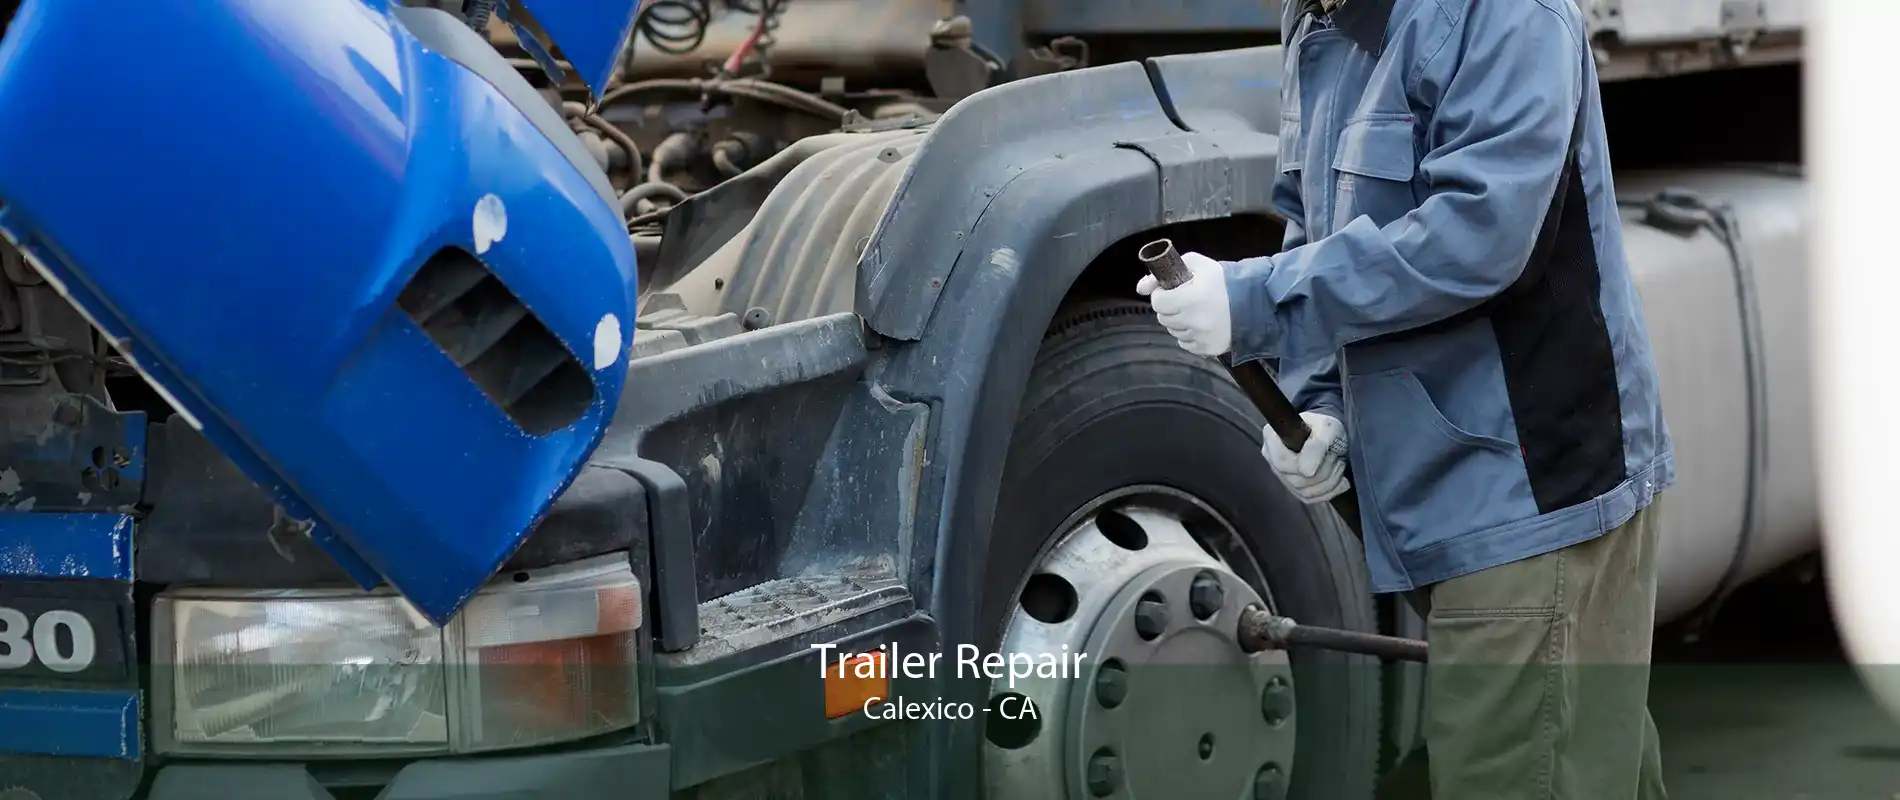 Trailer Repair Calexico - CA